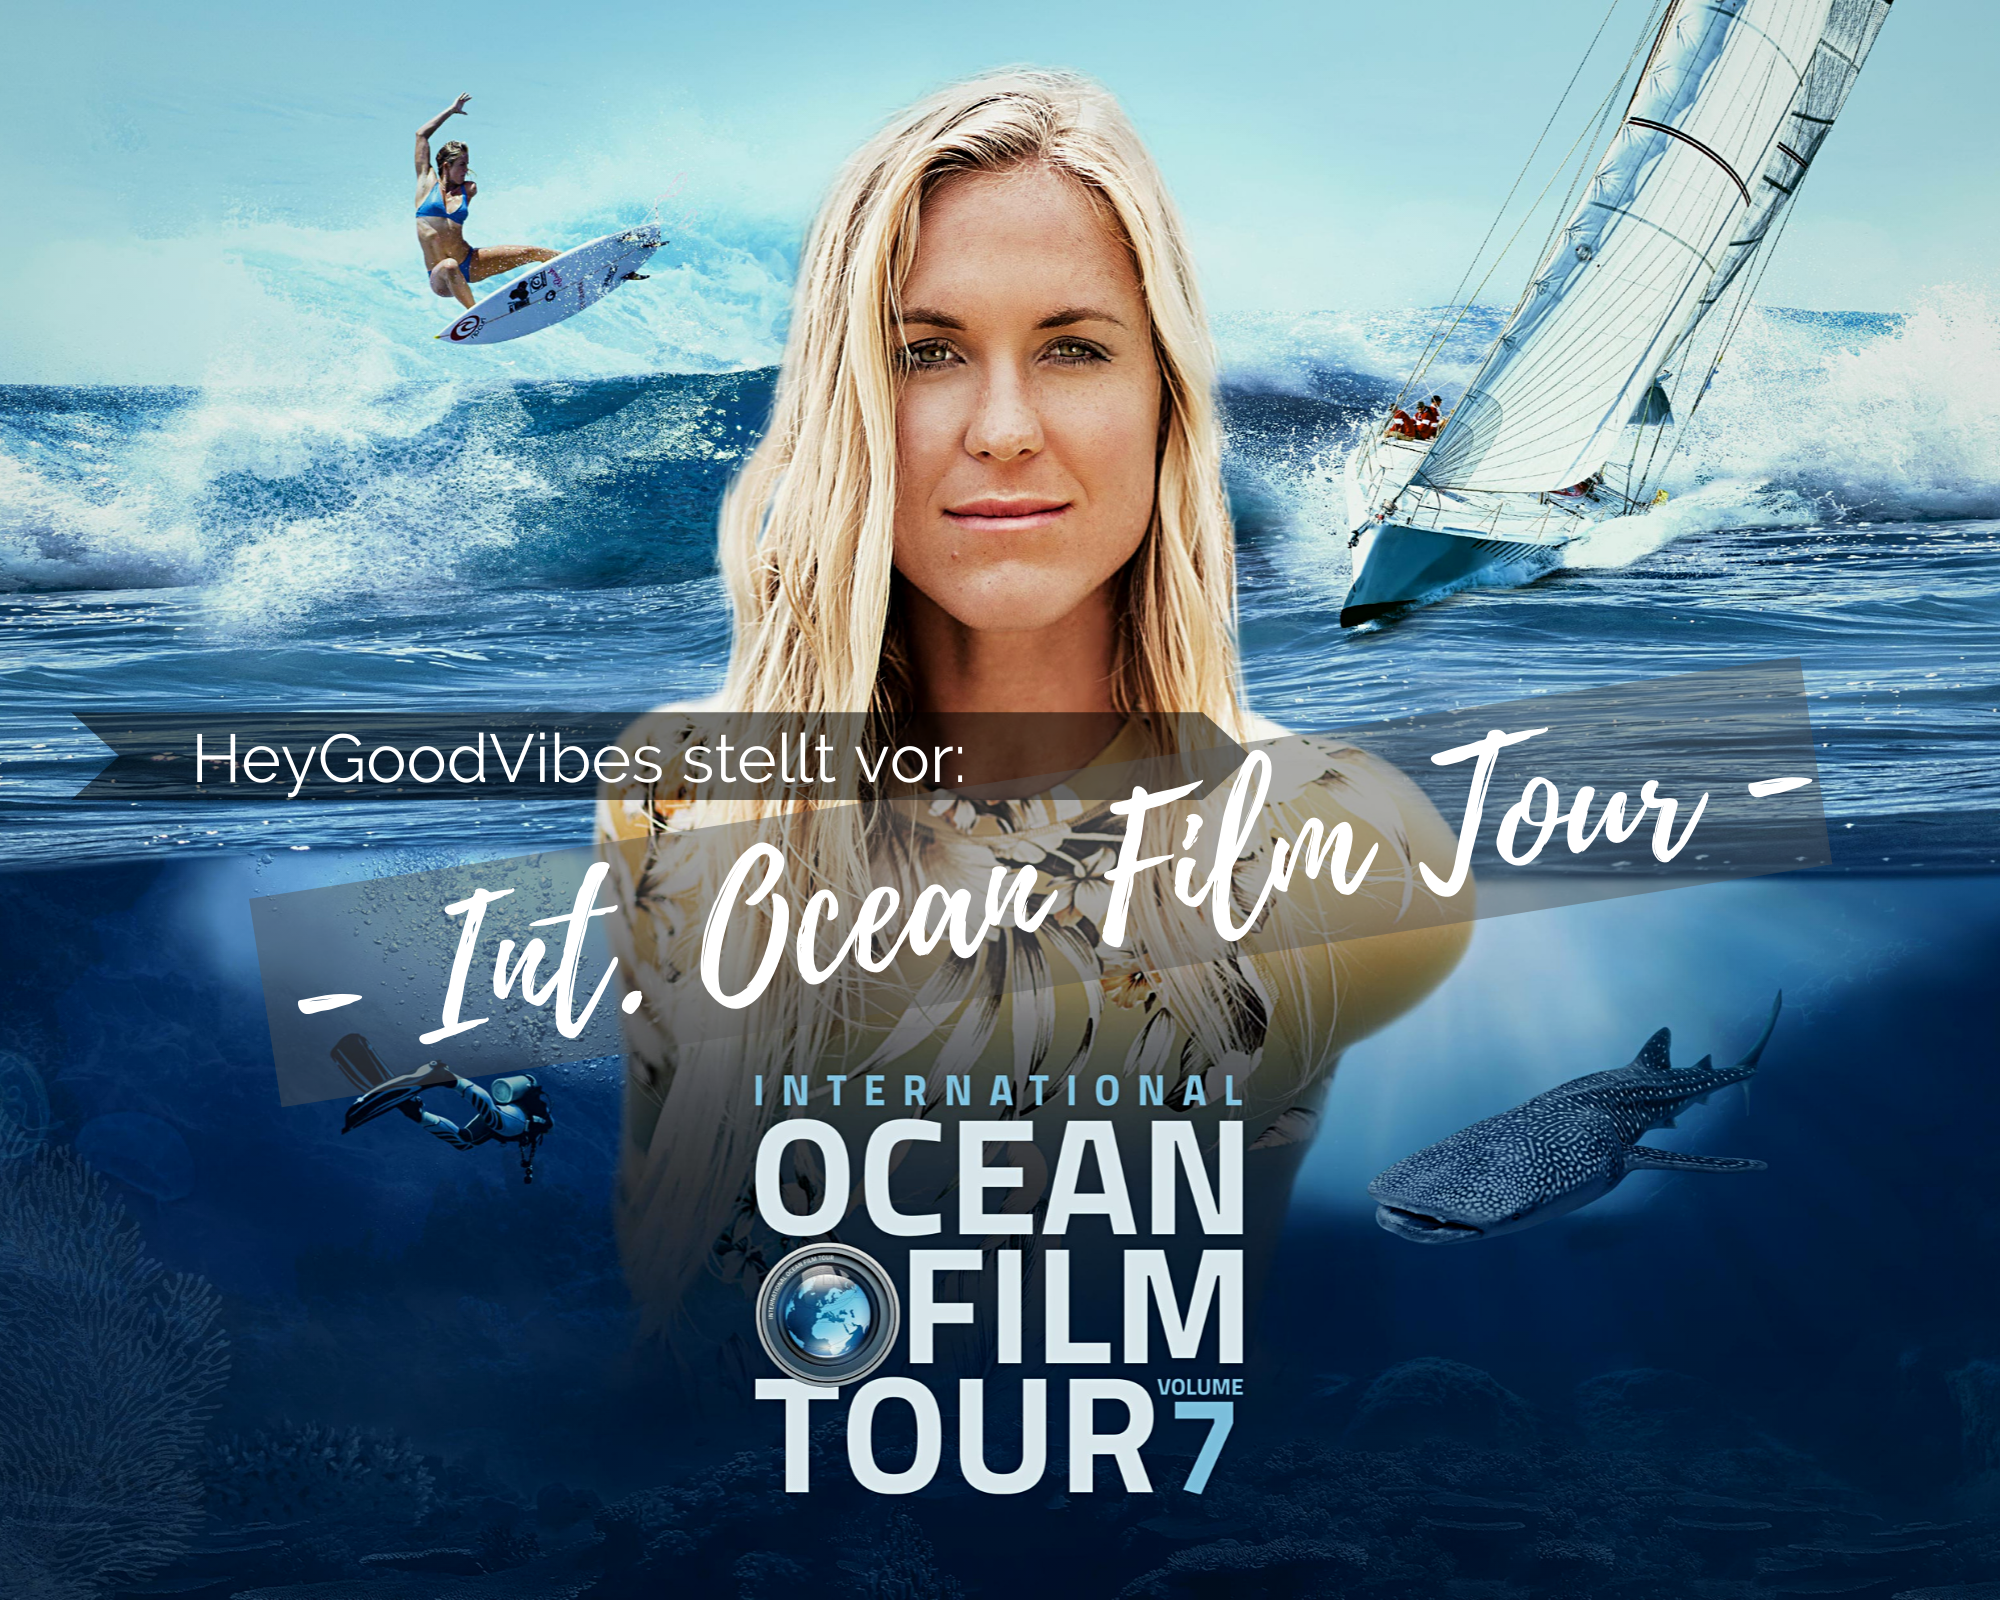 Bist du bereit für die INT. OCEAN FILM TOUR Vol. 7?